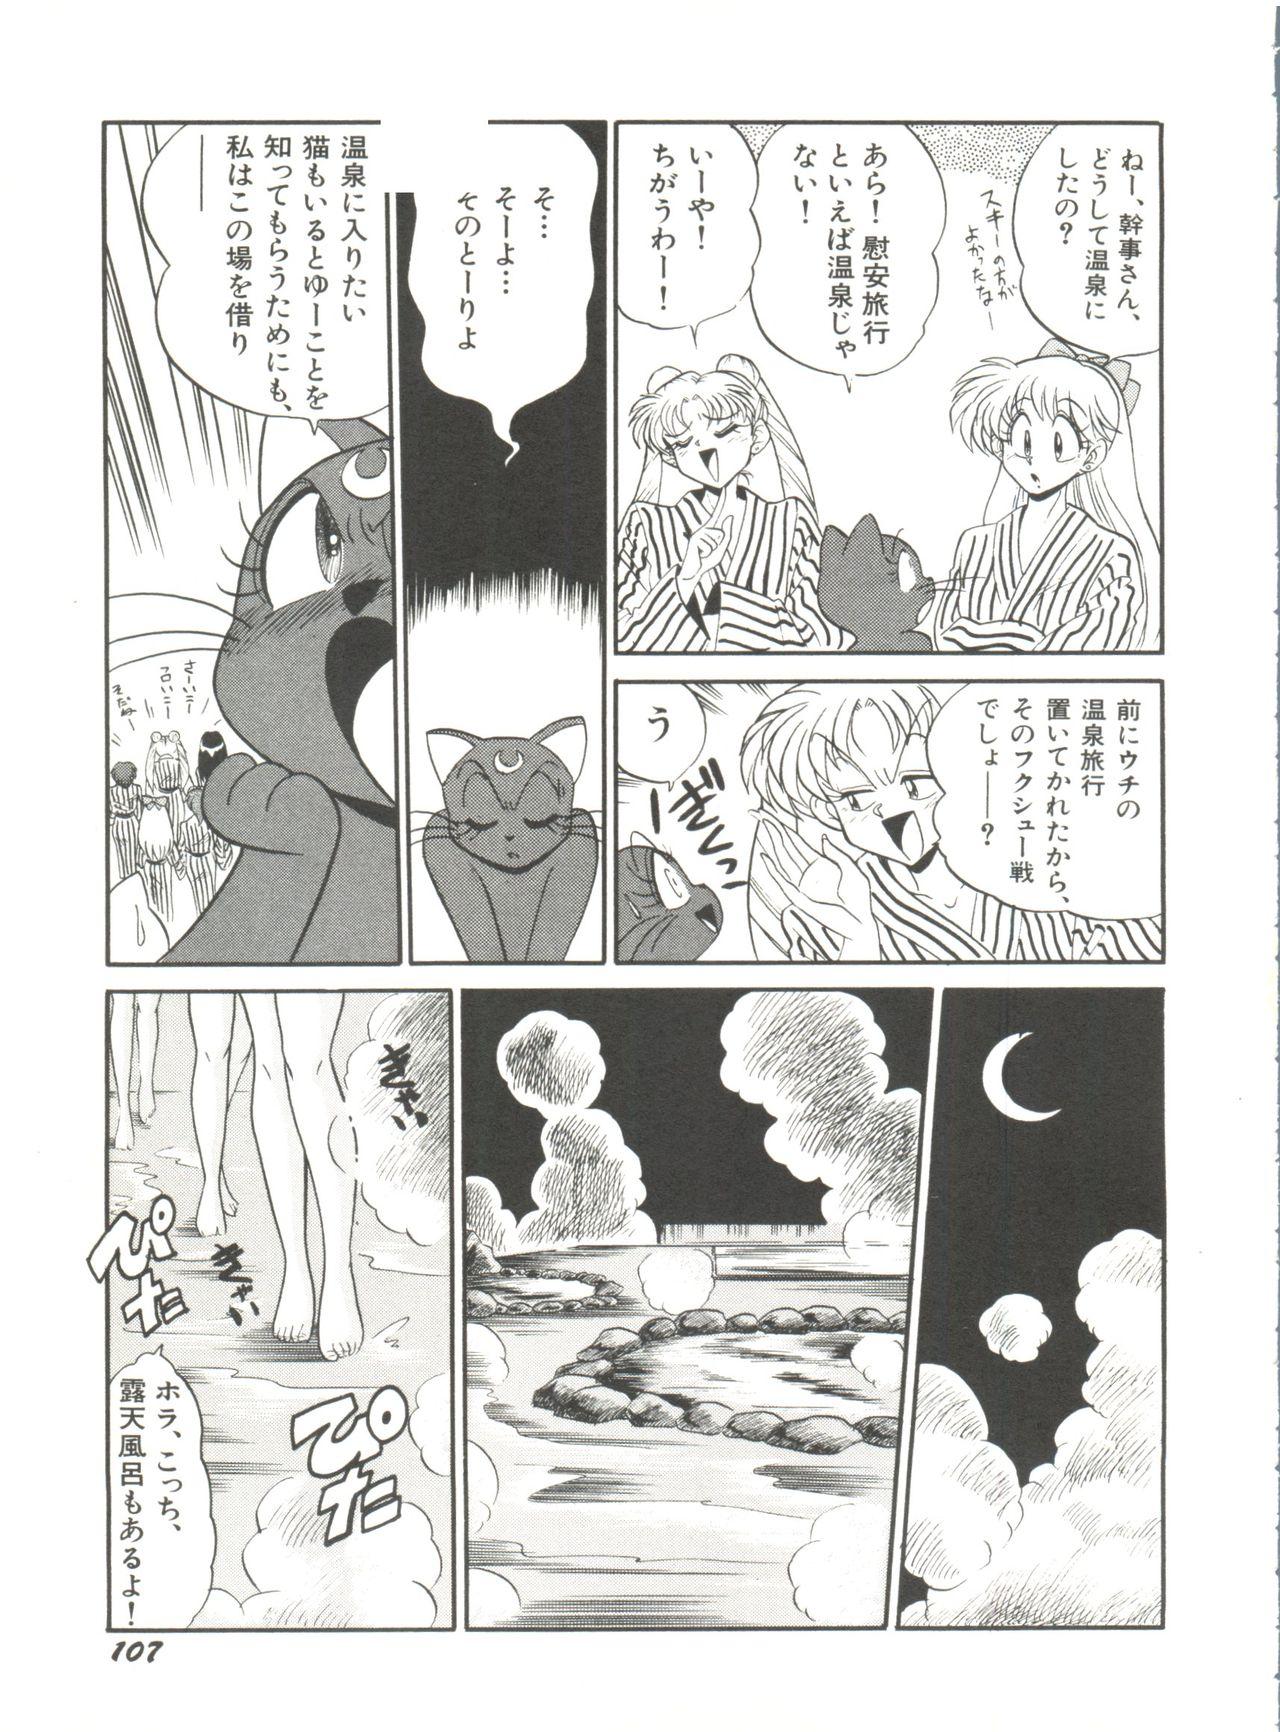 Bishoujo Doujinshi Anthology 2 - Moon Paradise 1 Tsuki no Rakuen 109